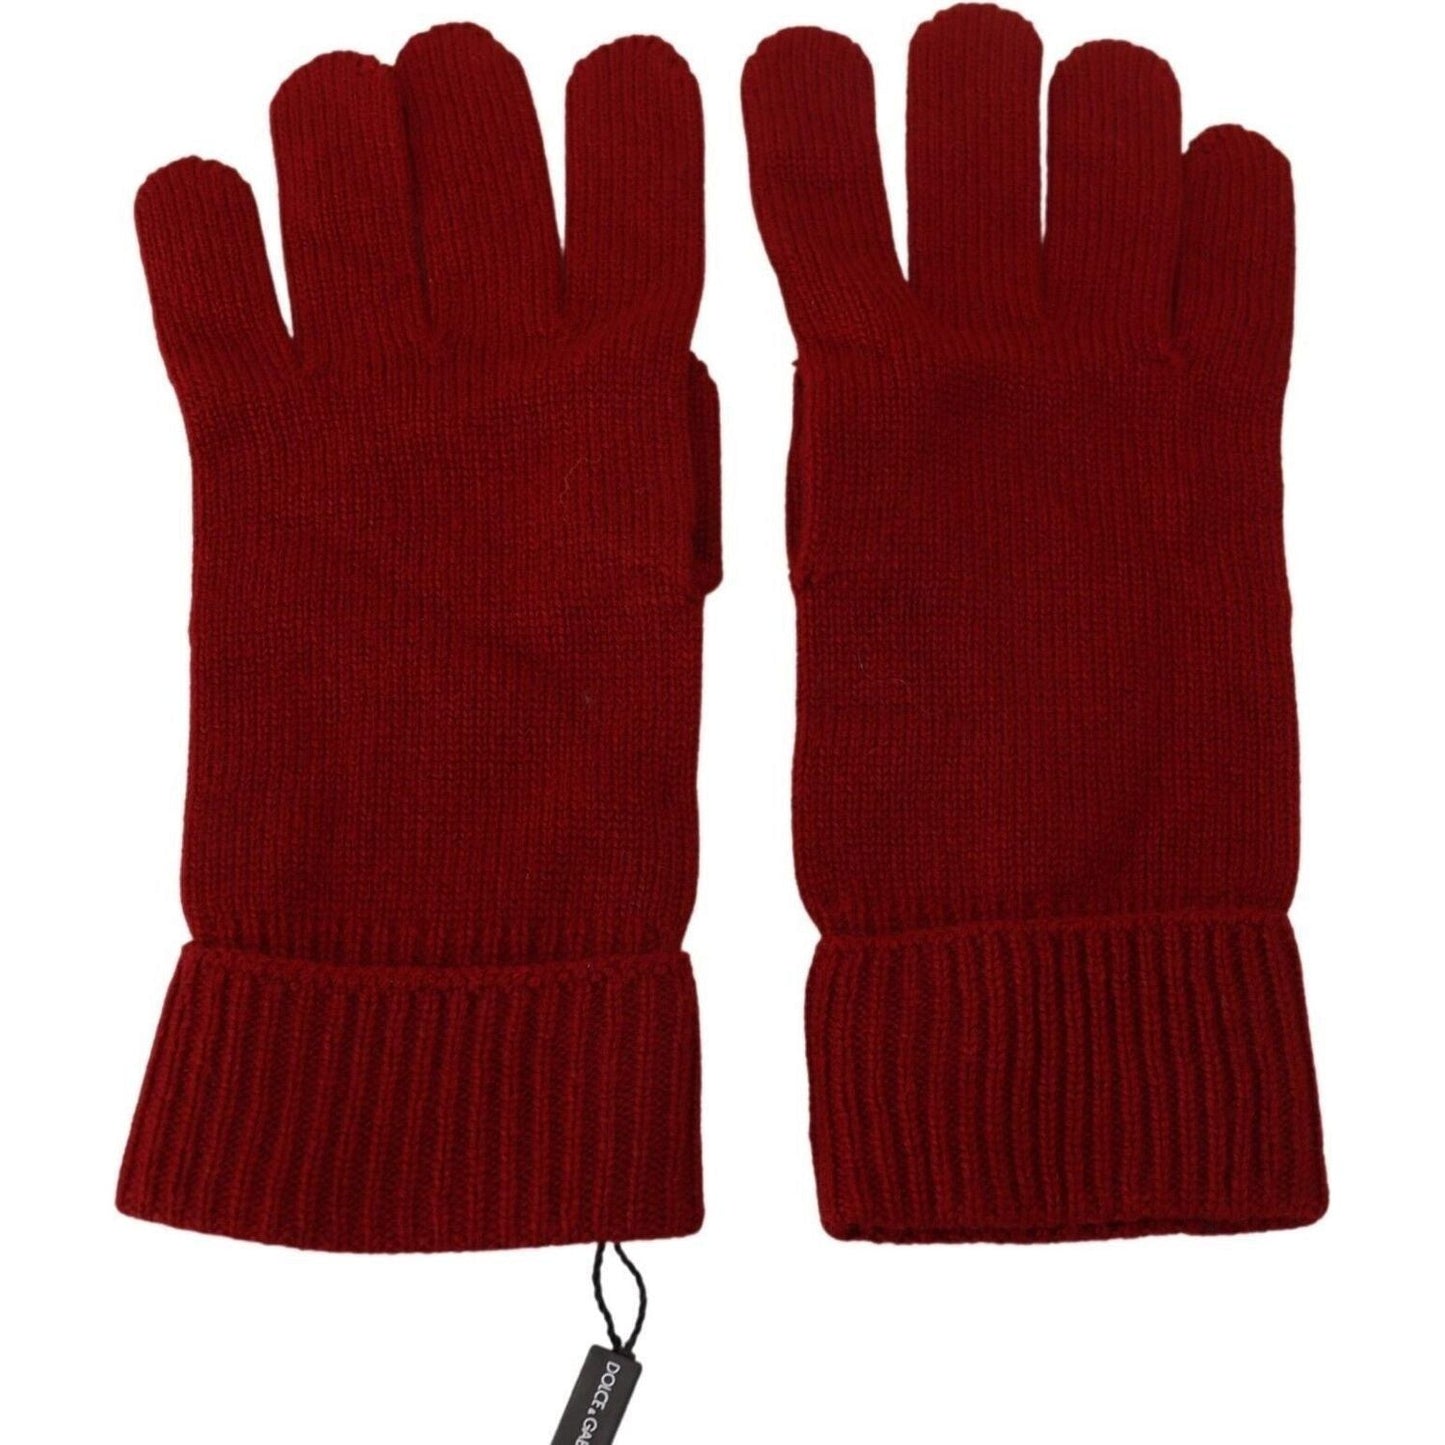 Elegant Red Cashmere Winter Gloves Dolce & Gabbana